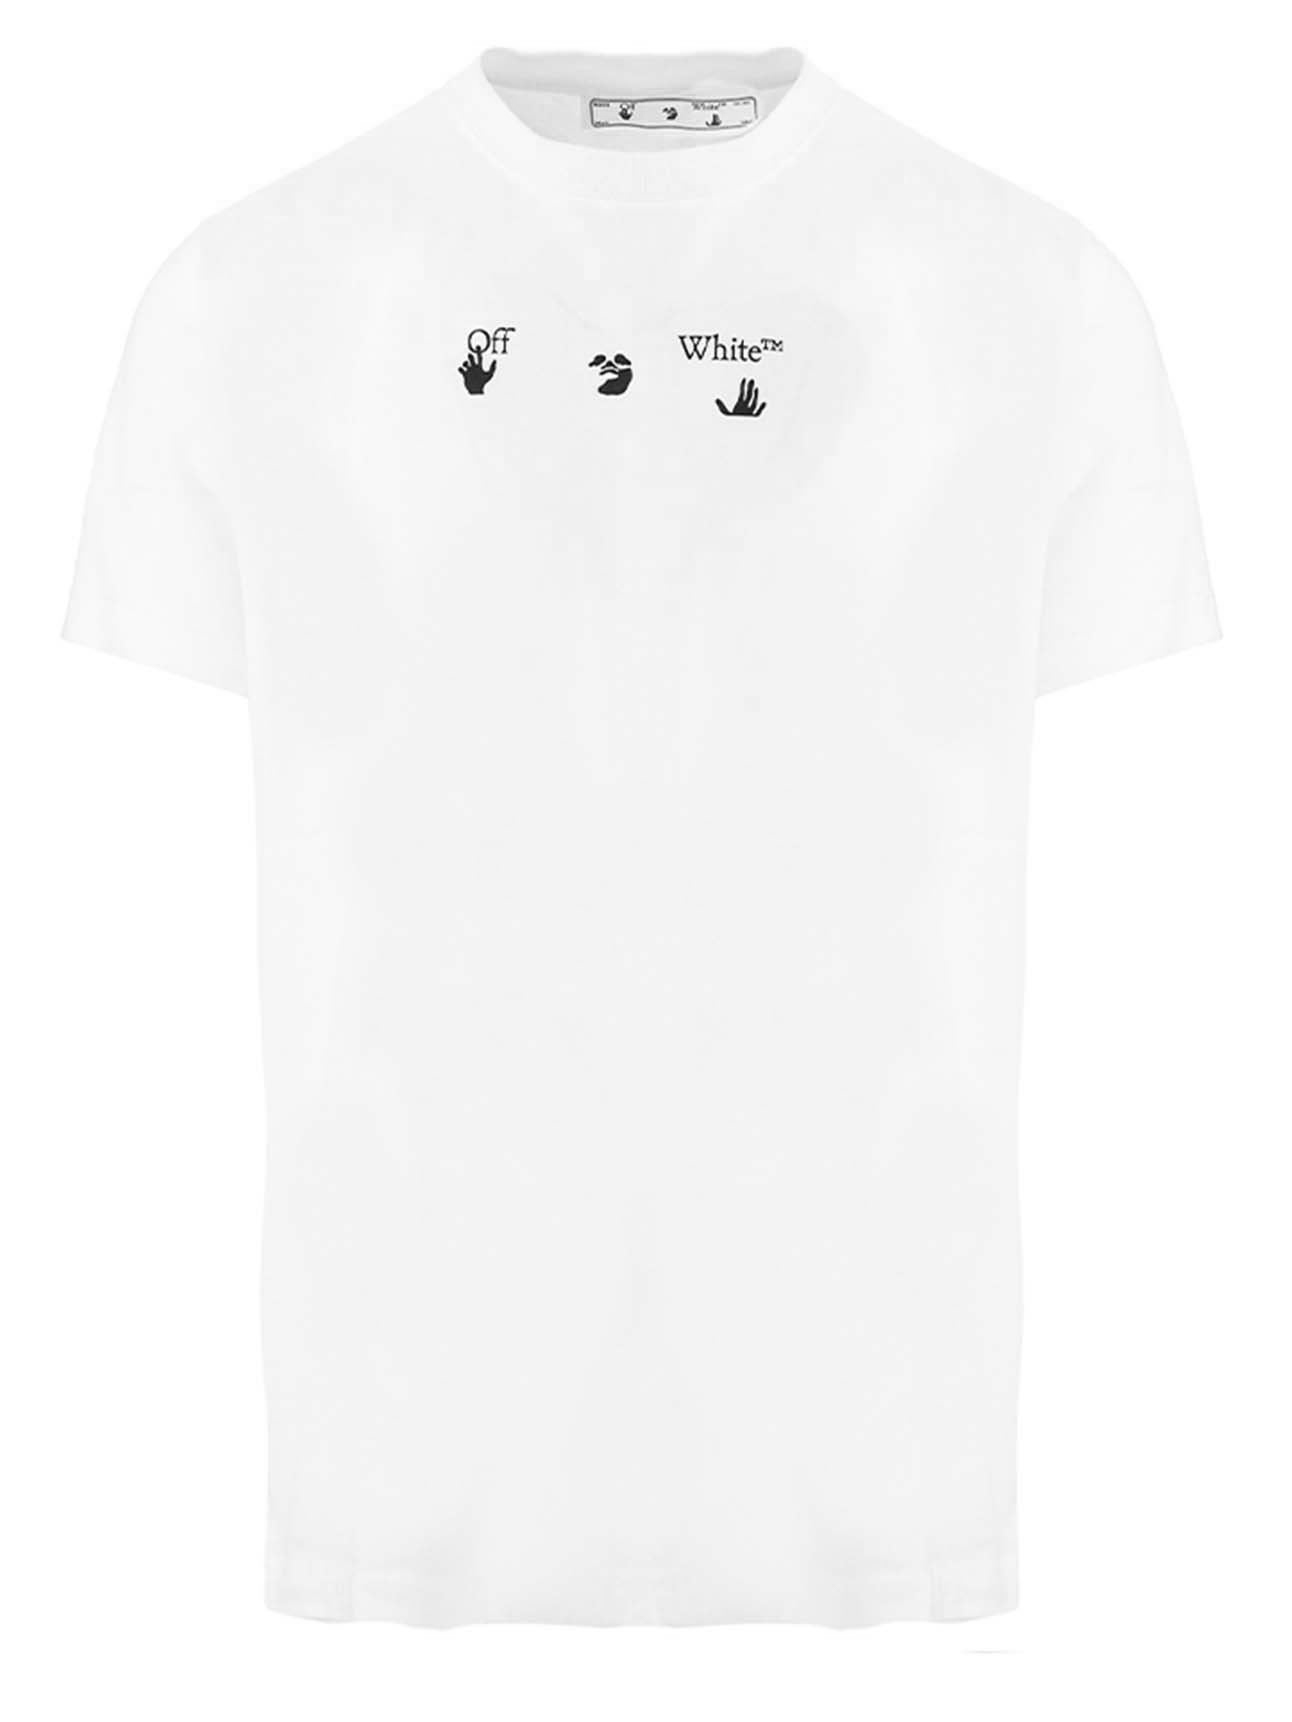 OFF-WHITE Spray Marker T-shirt White Black - SS21 Men's - US